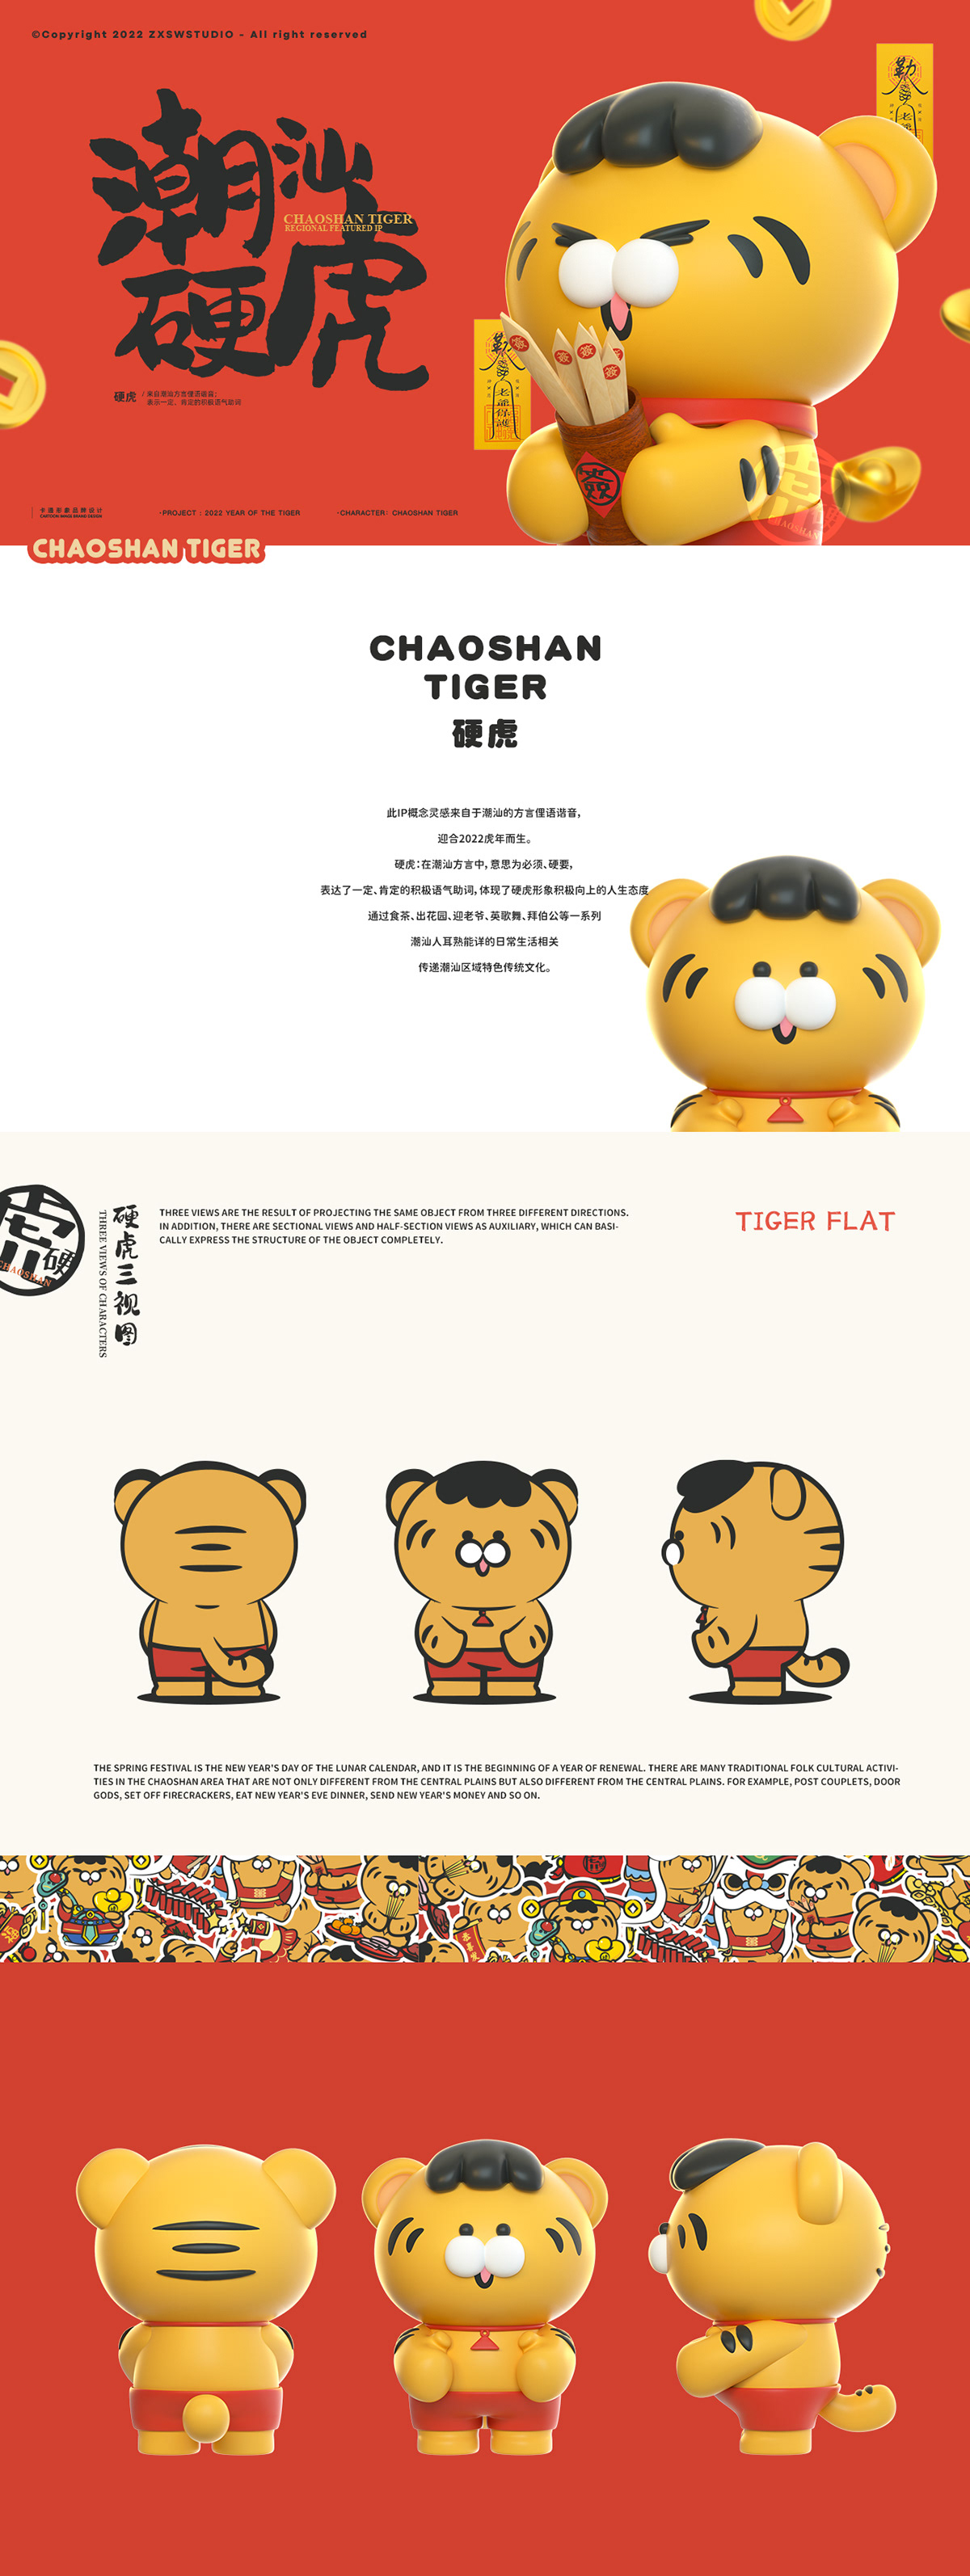 3D c4d cartoon Character IP Mascot tiger 卡通形象 吉祥物 潮汕